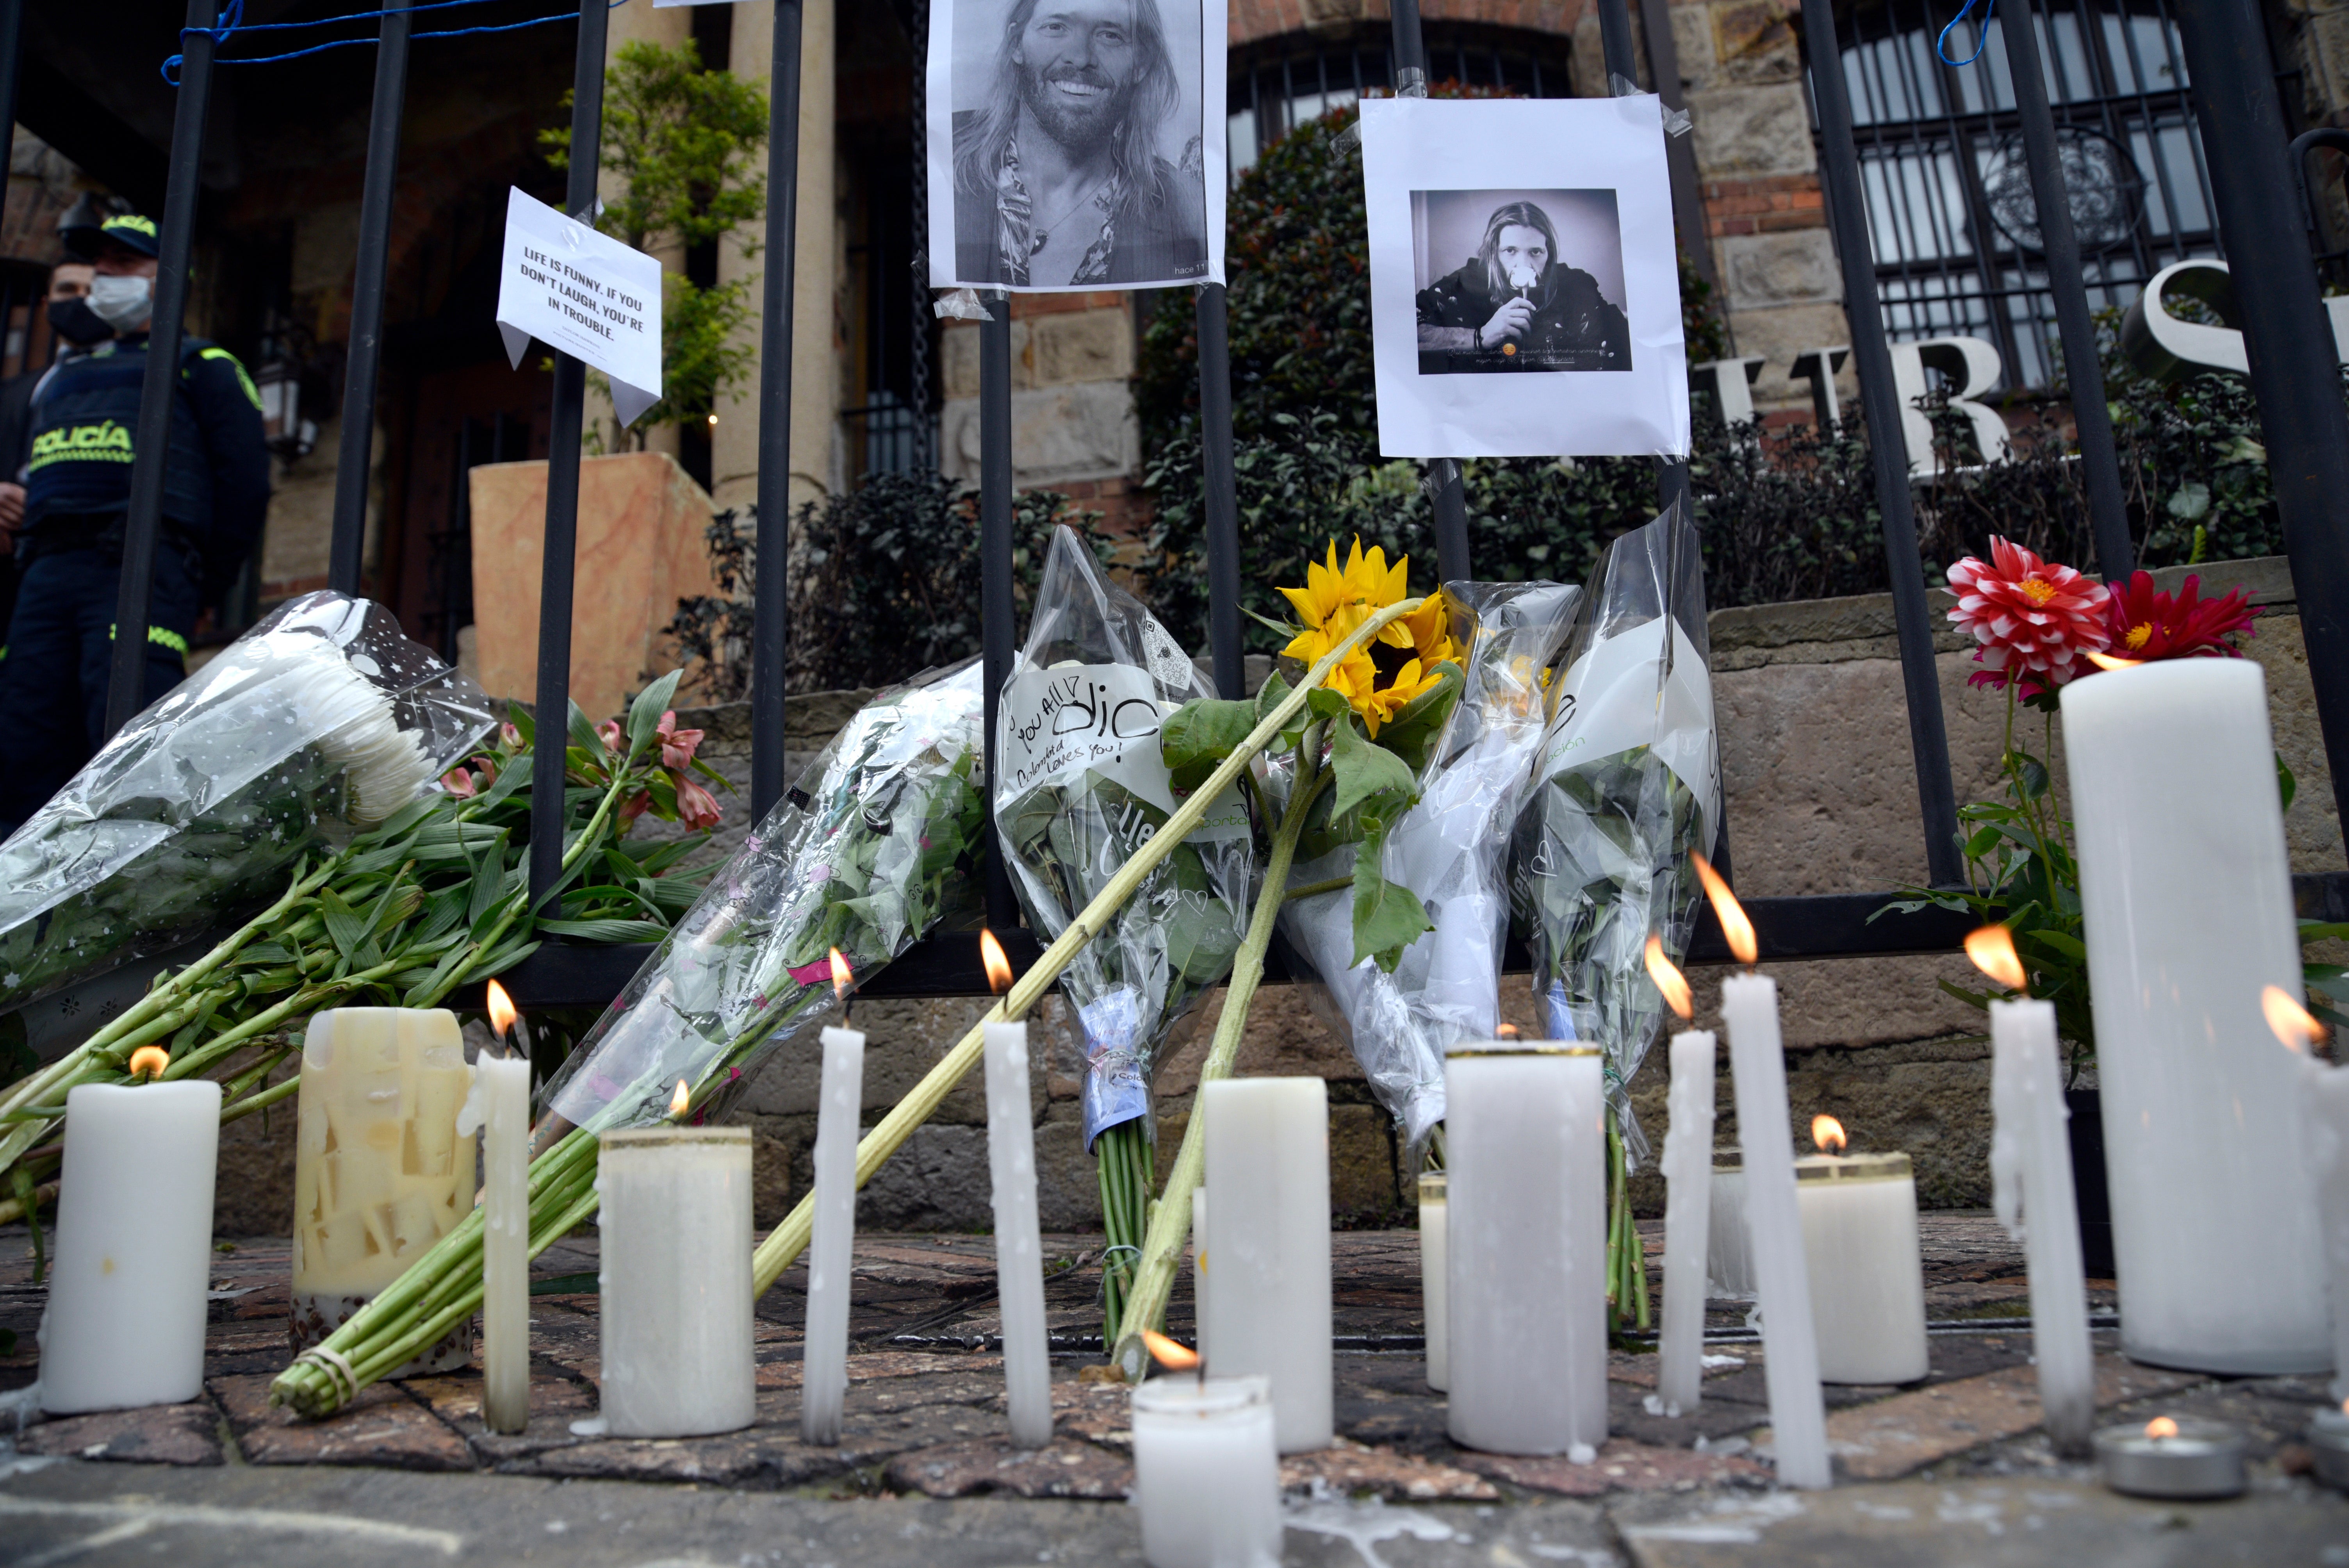 Los fans depositan flores frente al hotel Casa Medina, donde Hawkins fue encontrado muerto